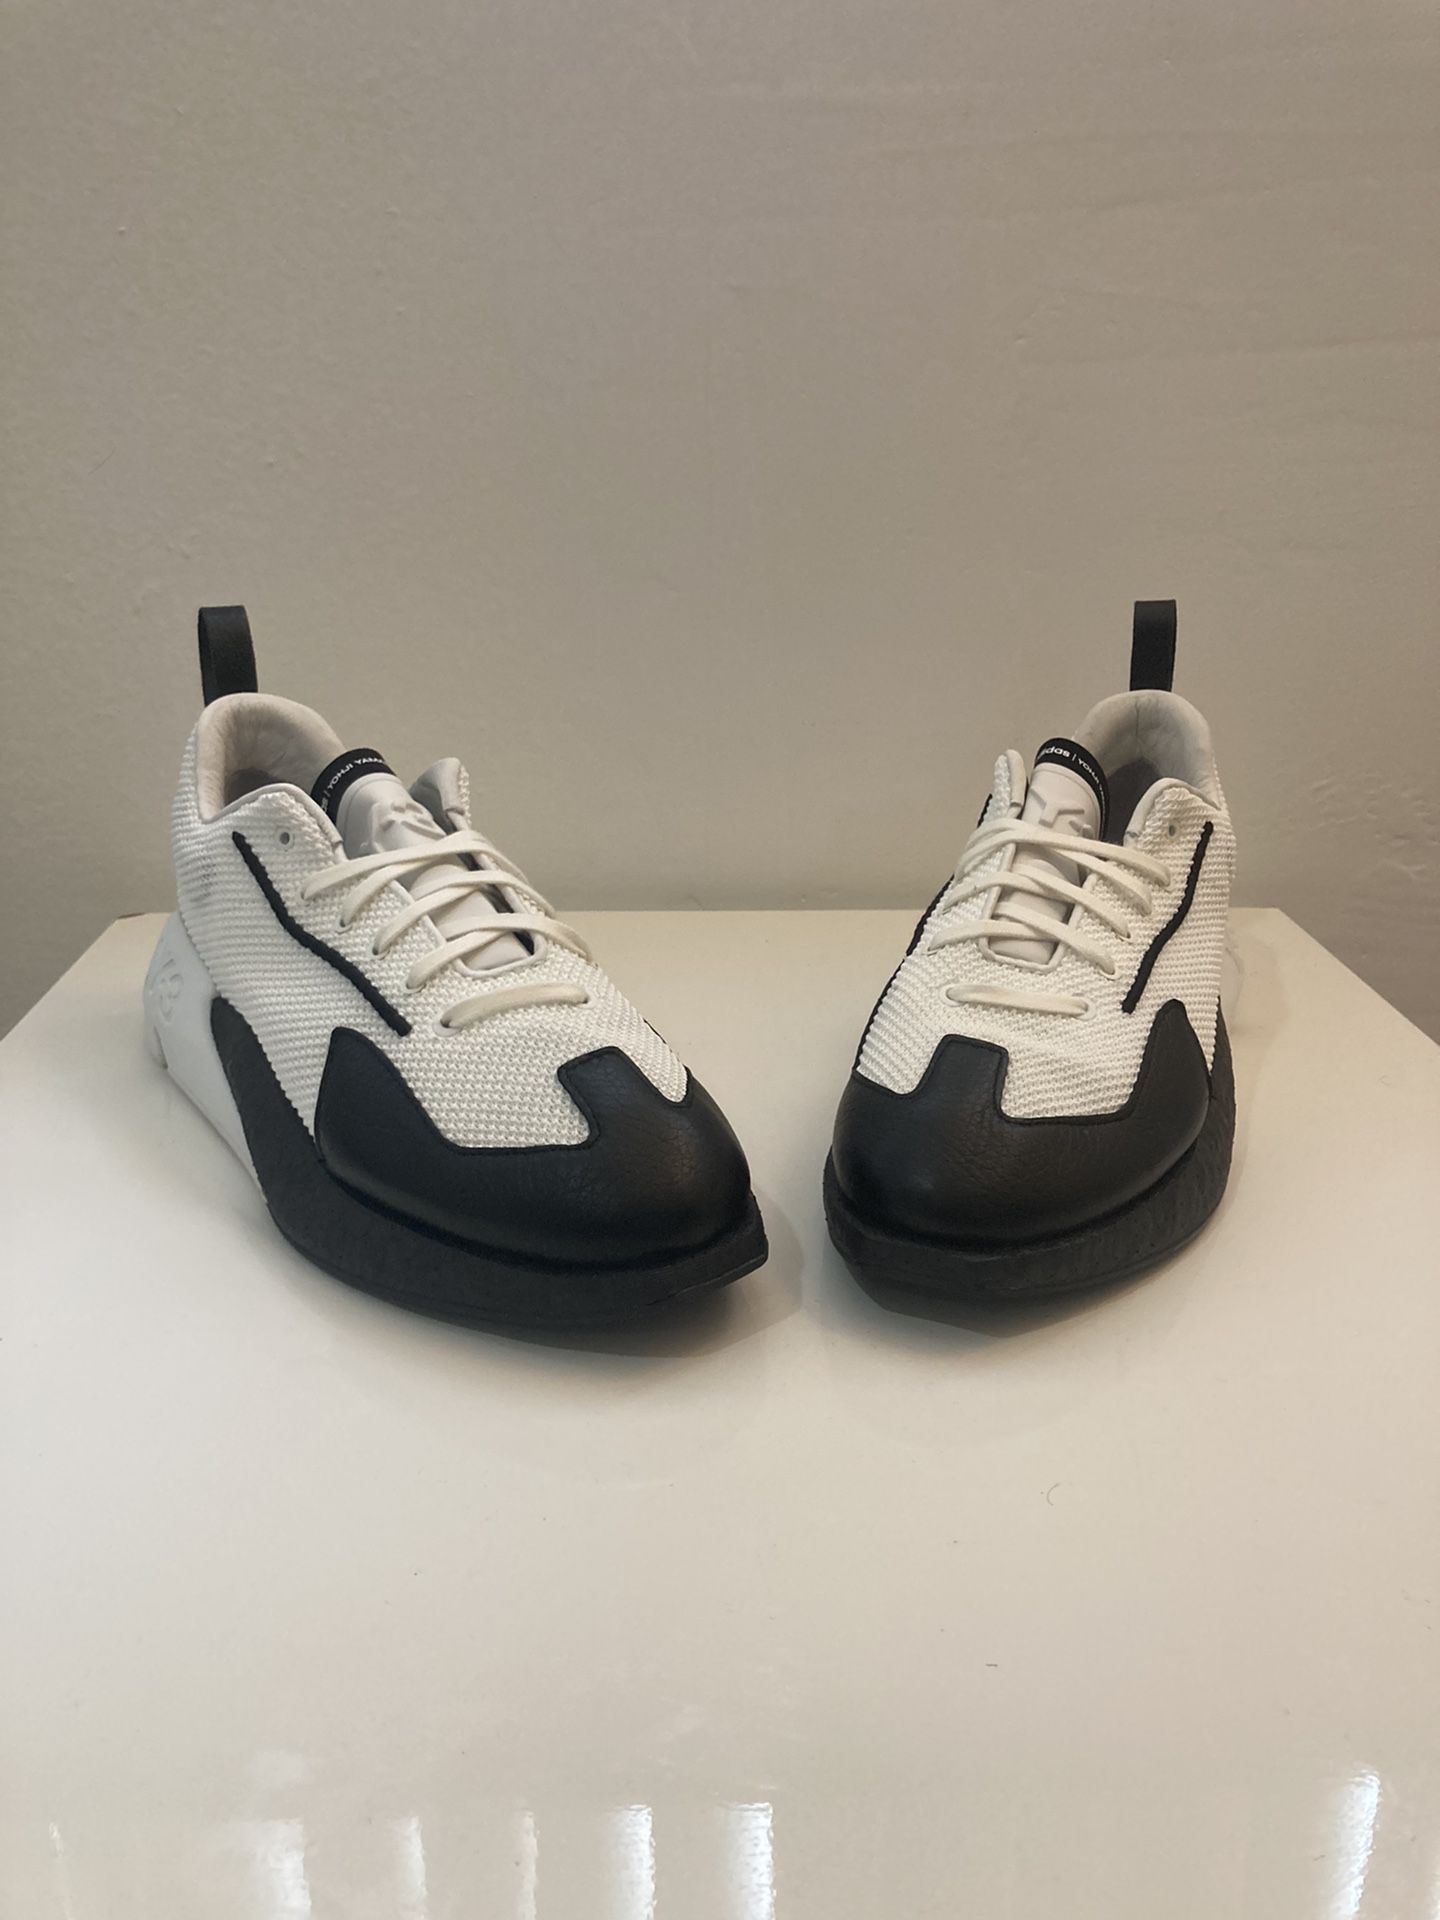 Adidas x y-3 Orisan sneakers - white/ black size 9 200$